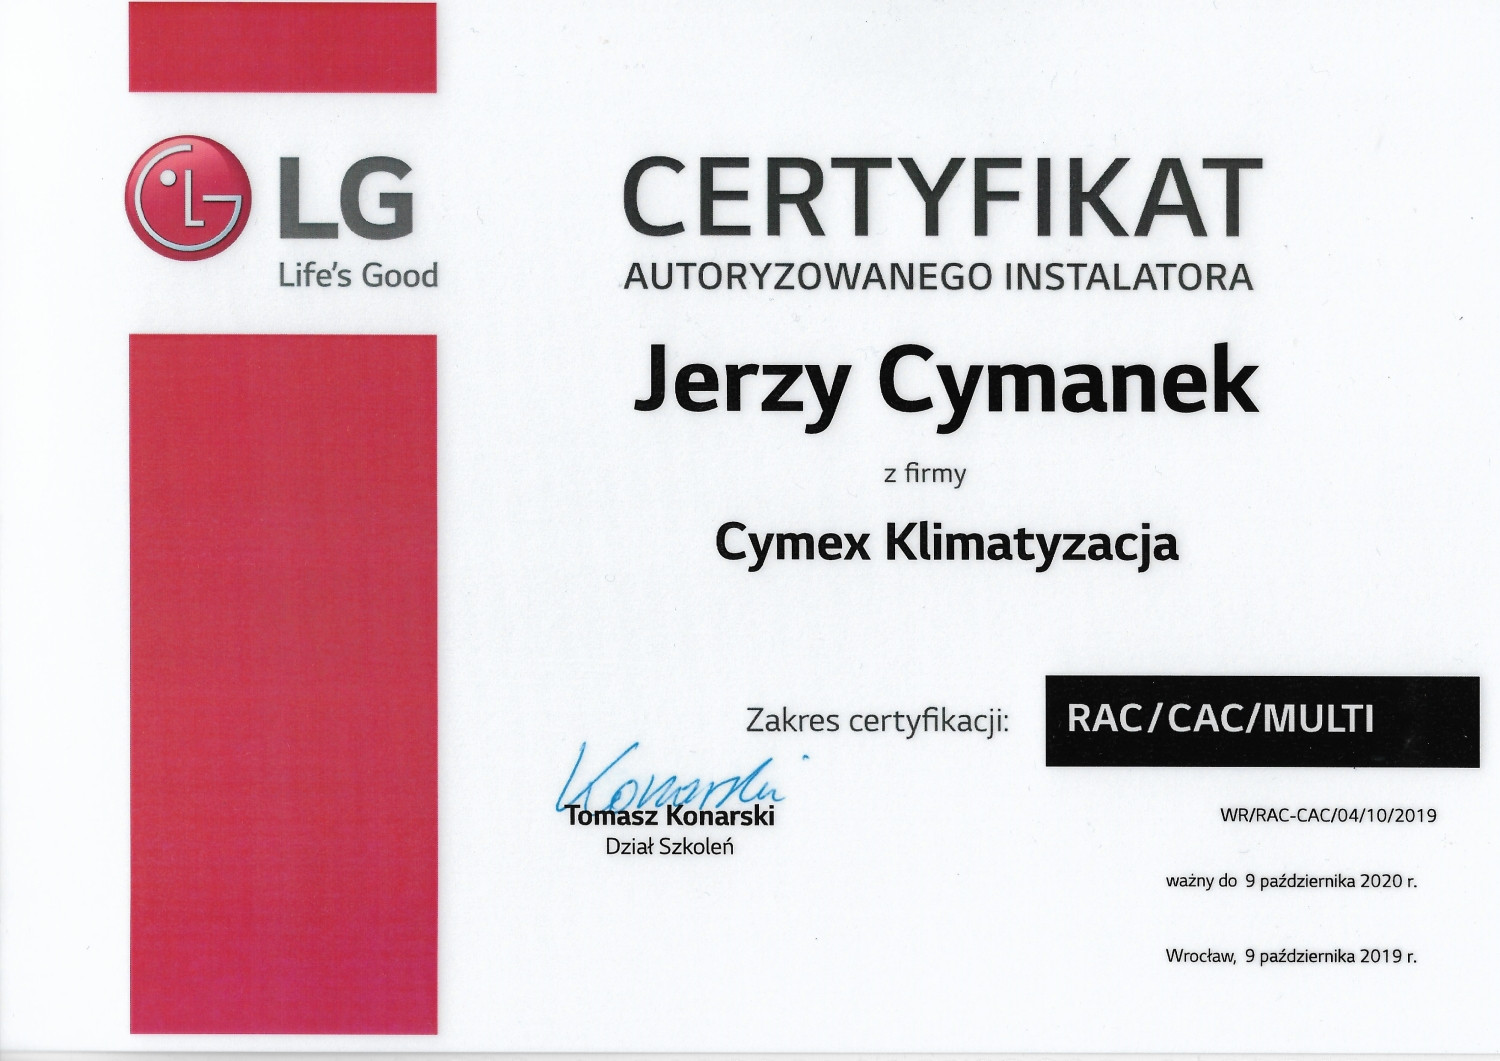 Certyfikat Autoryzowanego Instalatora LG 2019